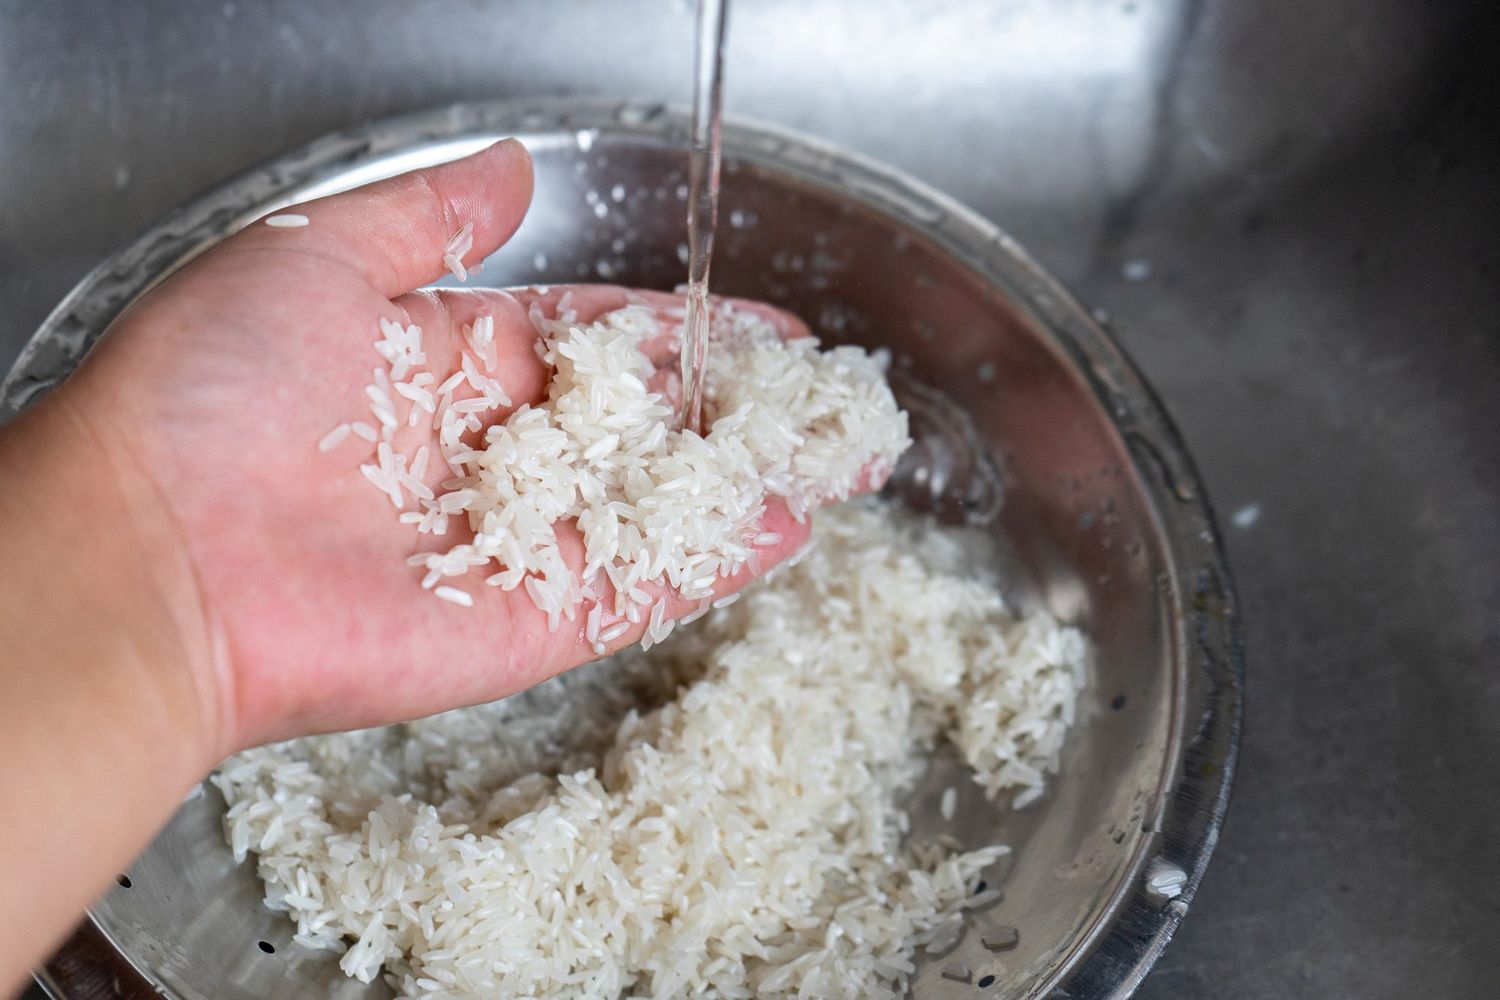 Washing white rice